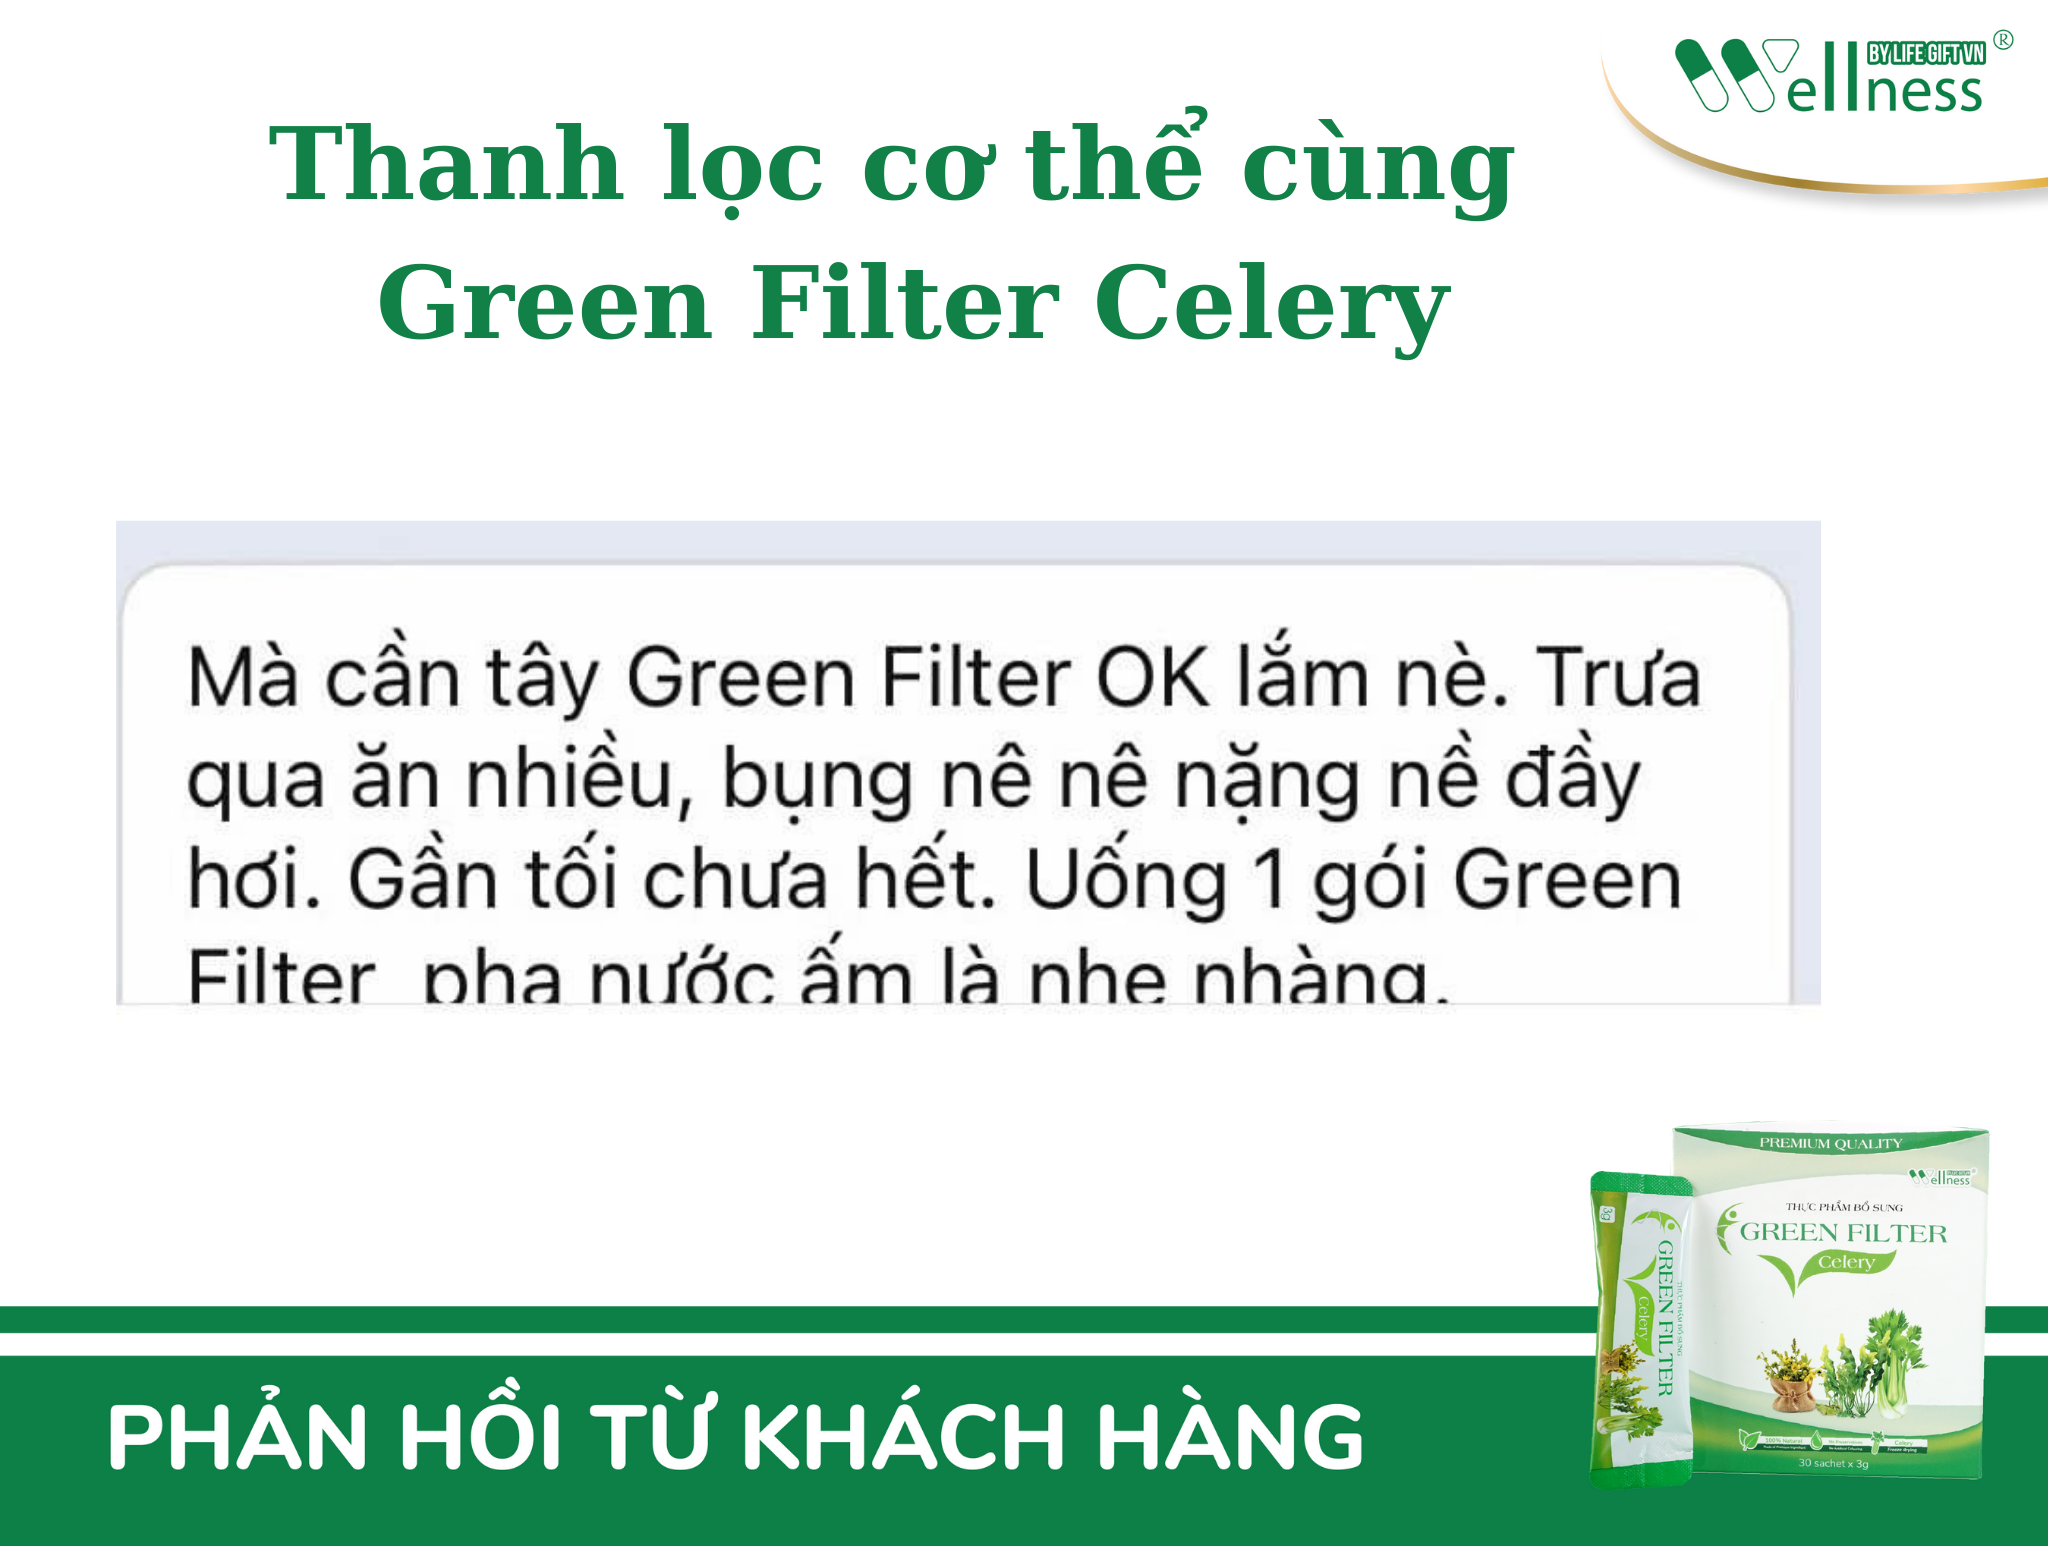 Thanh lọc cơ thể cùng Green Filter Celery